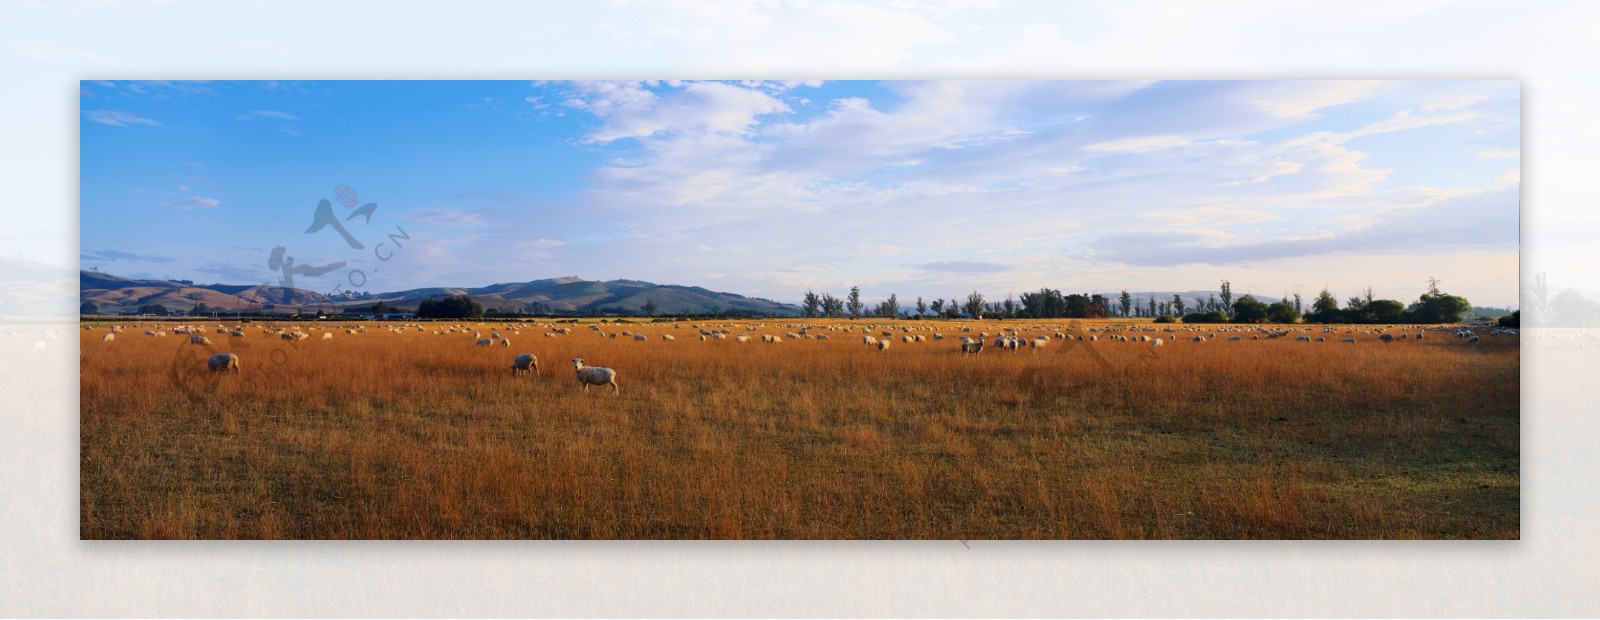 大幅风景草原放牧羊群图片